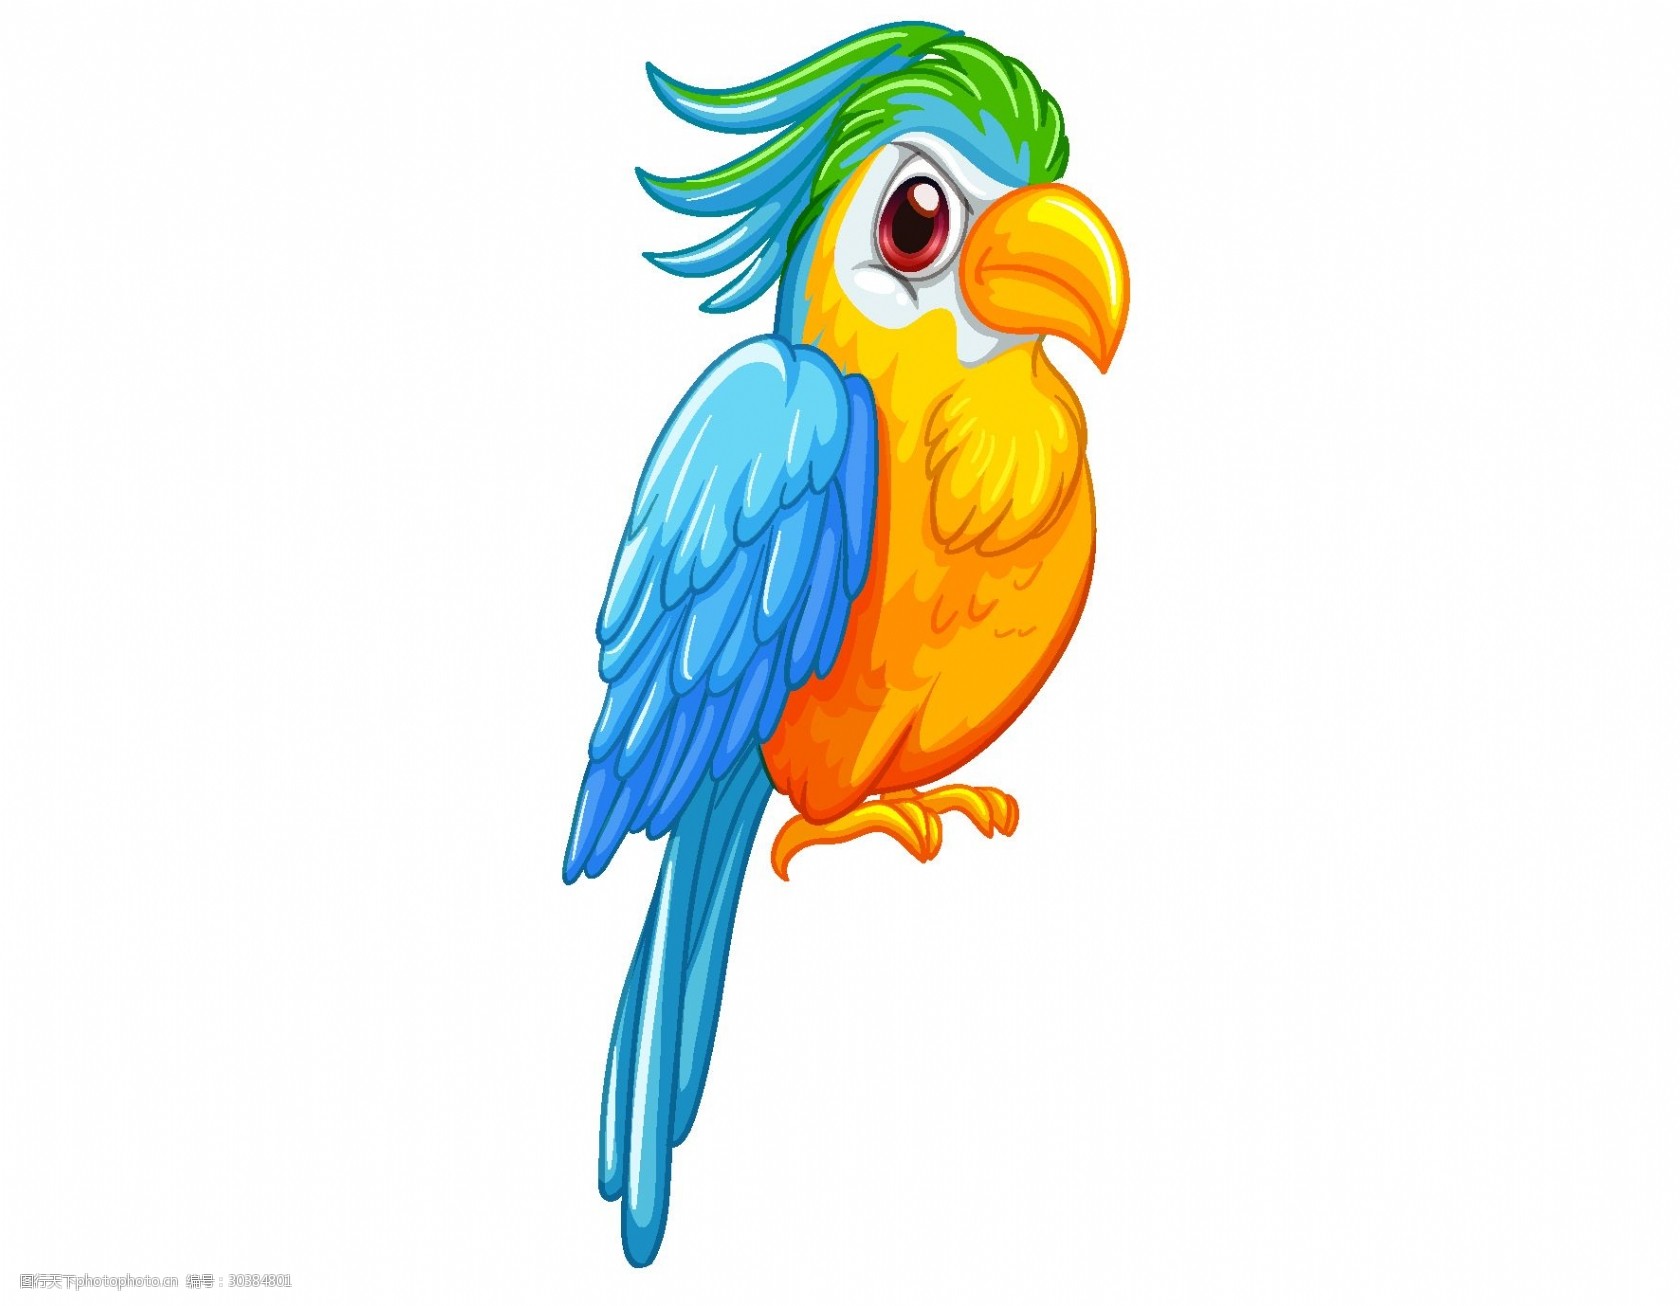 关键词:手绘卡通彩色鹦鹉矢量图 鹦鹉 小鸟 彩色 动物园 透明元素 ai